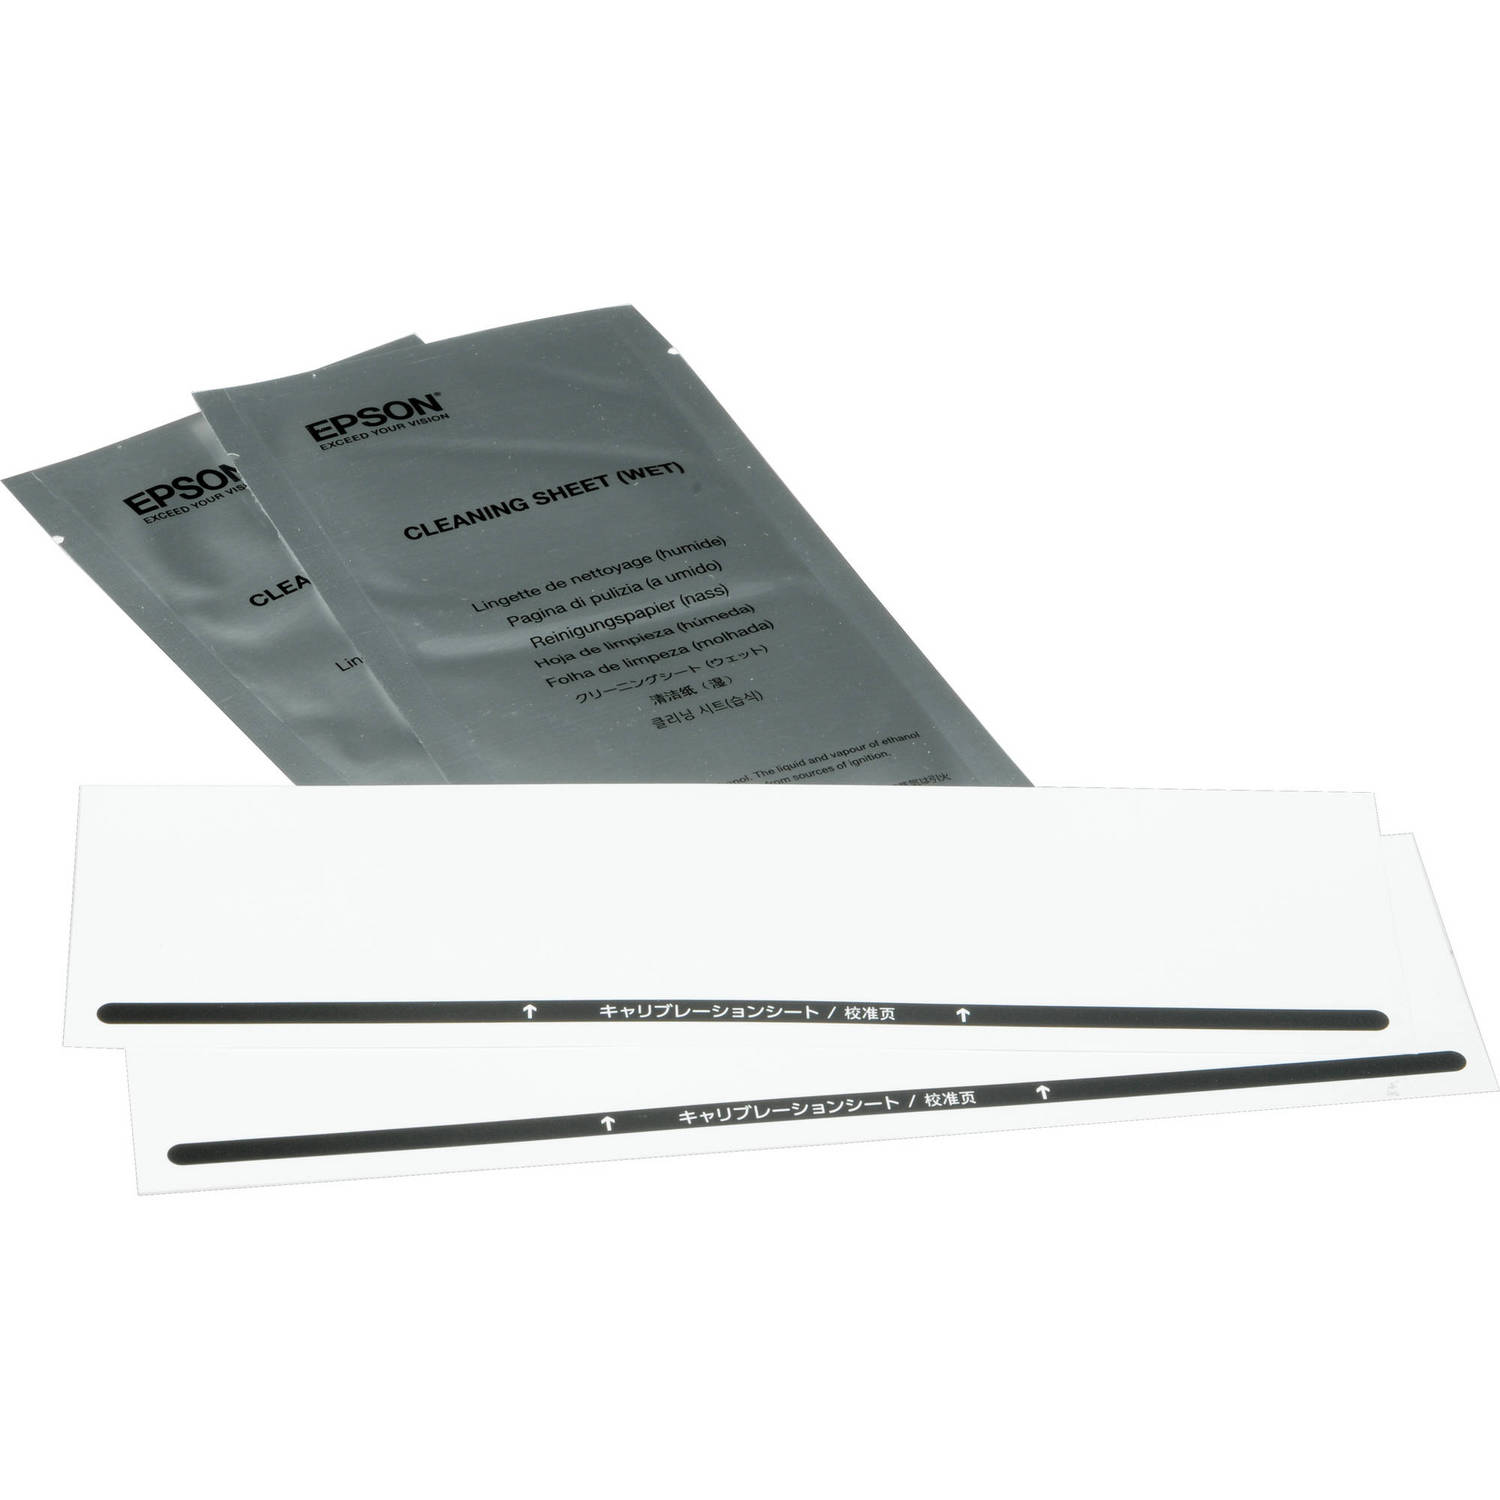 Epson Maintenance Sheet Kit For Ds-30 Scanner